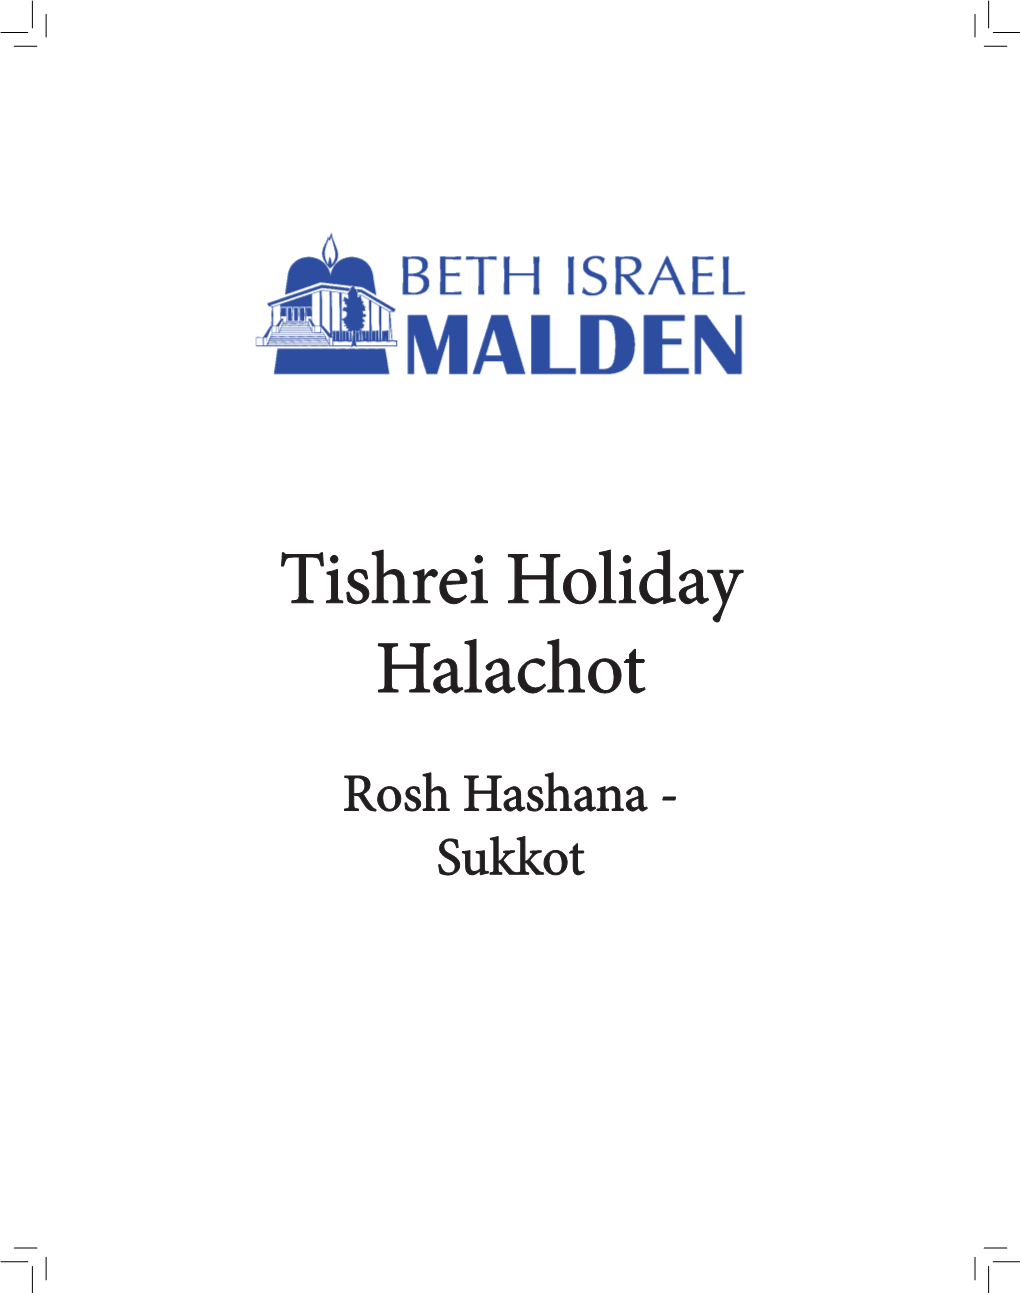 Annual-Halacha-Guide